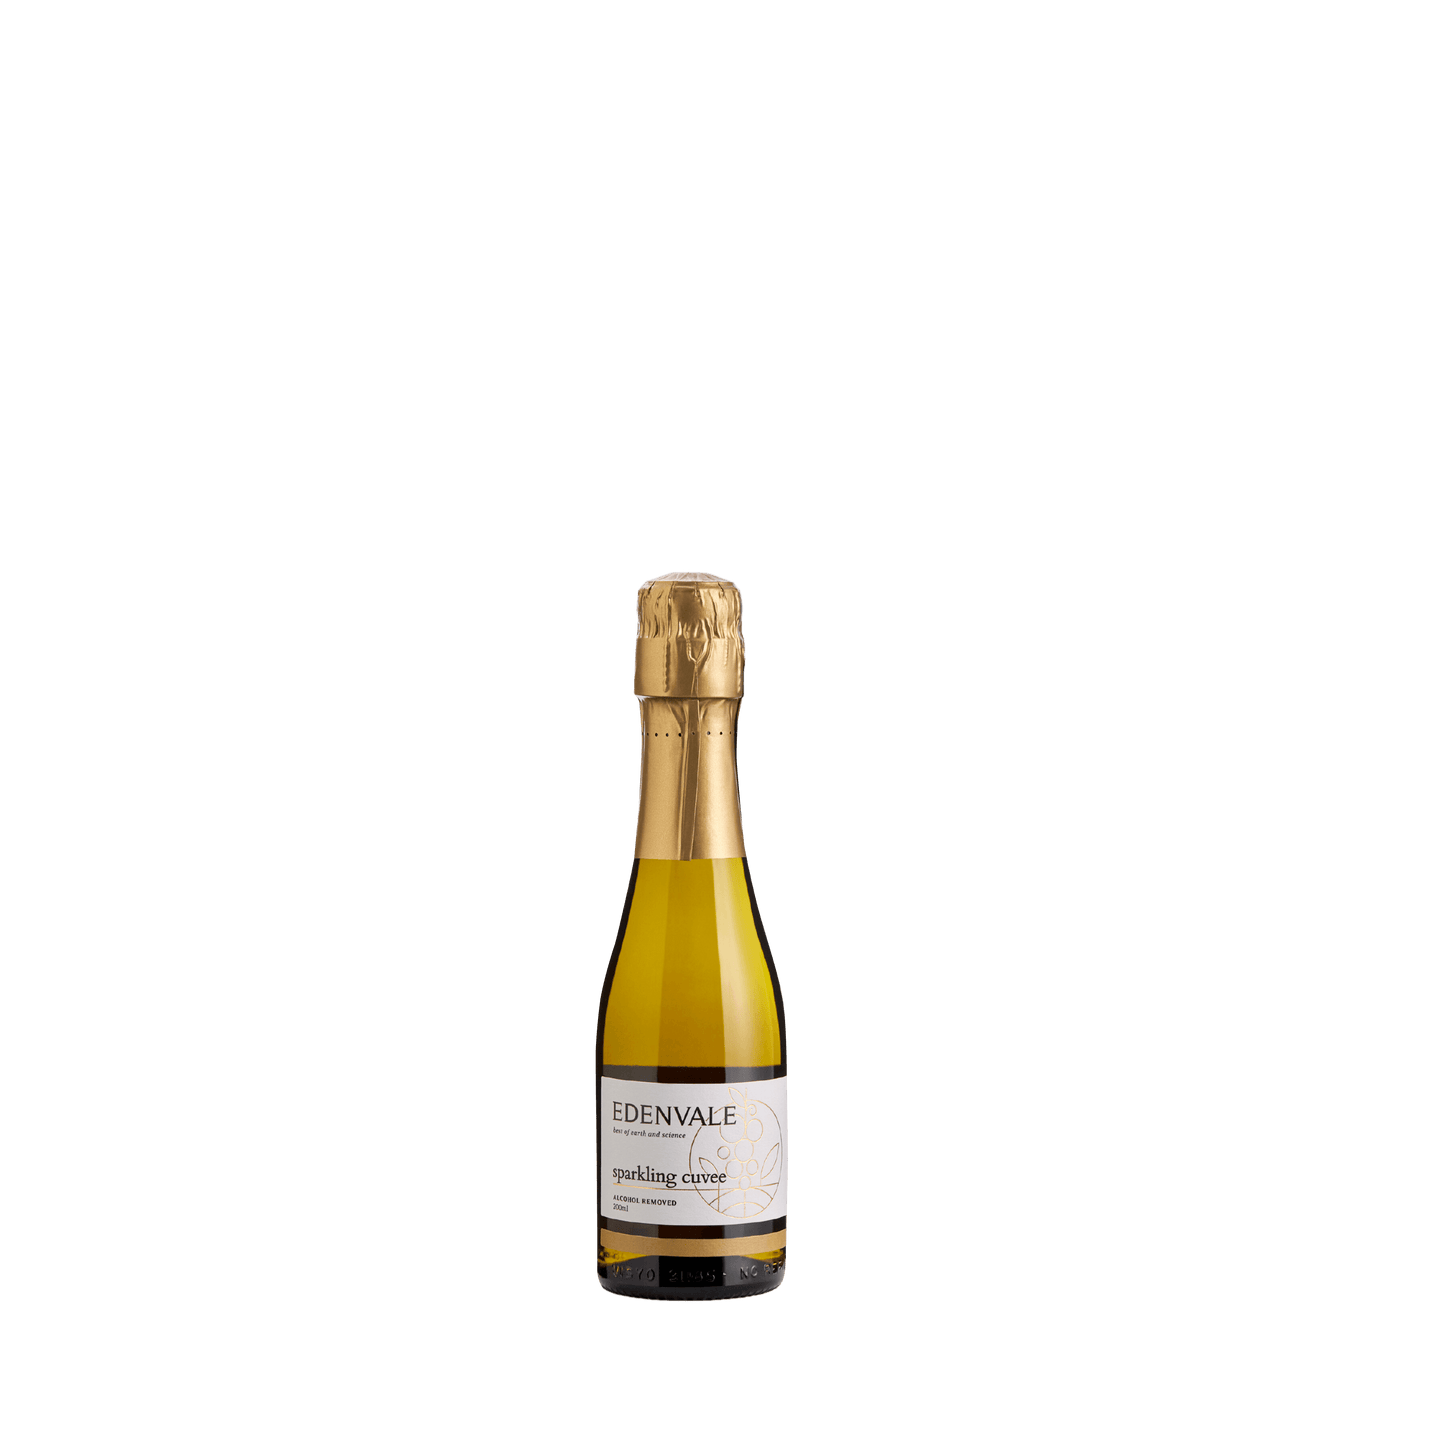 Edenvale non-alcoholic sparkling cuvee mini wine